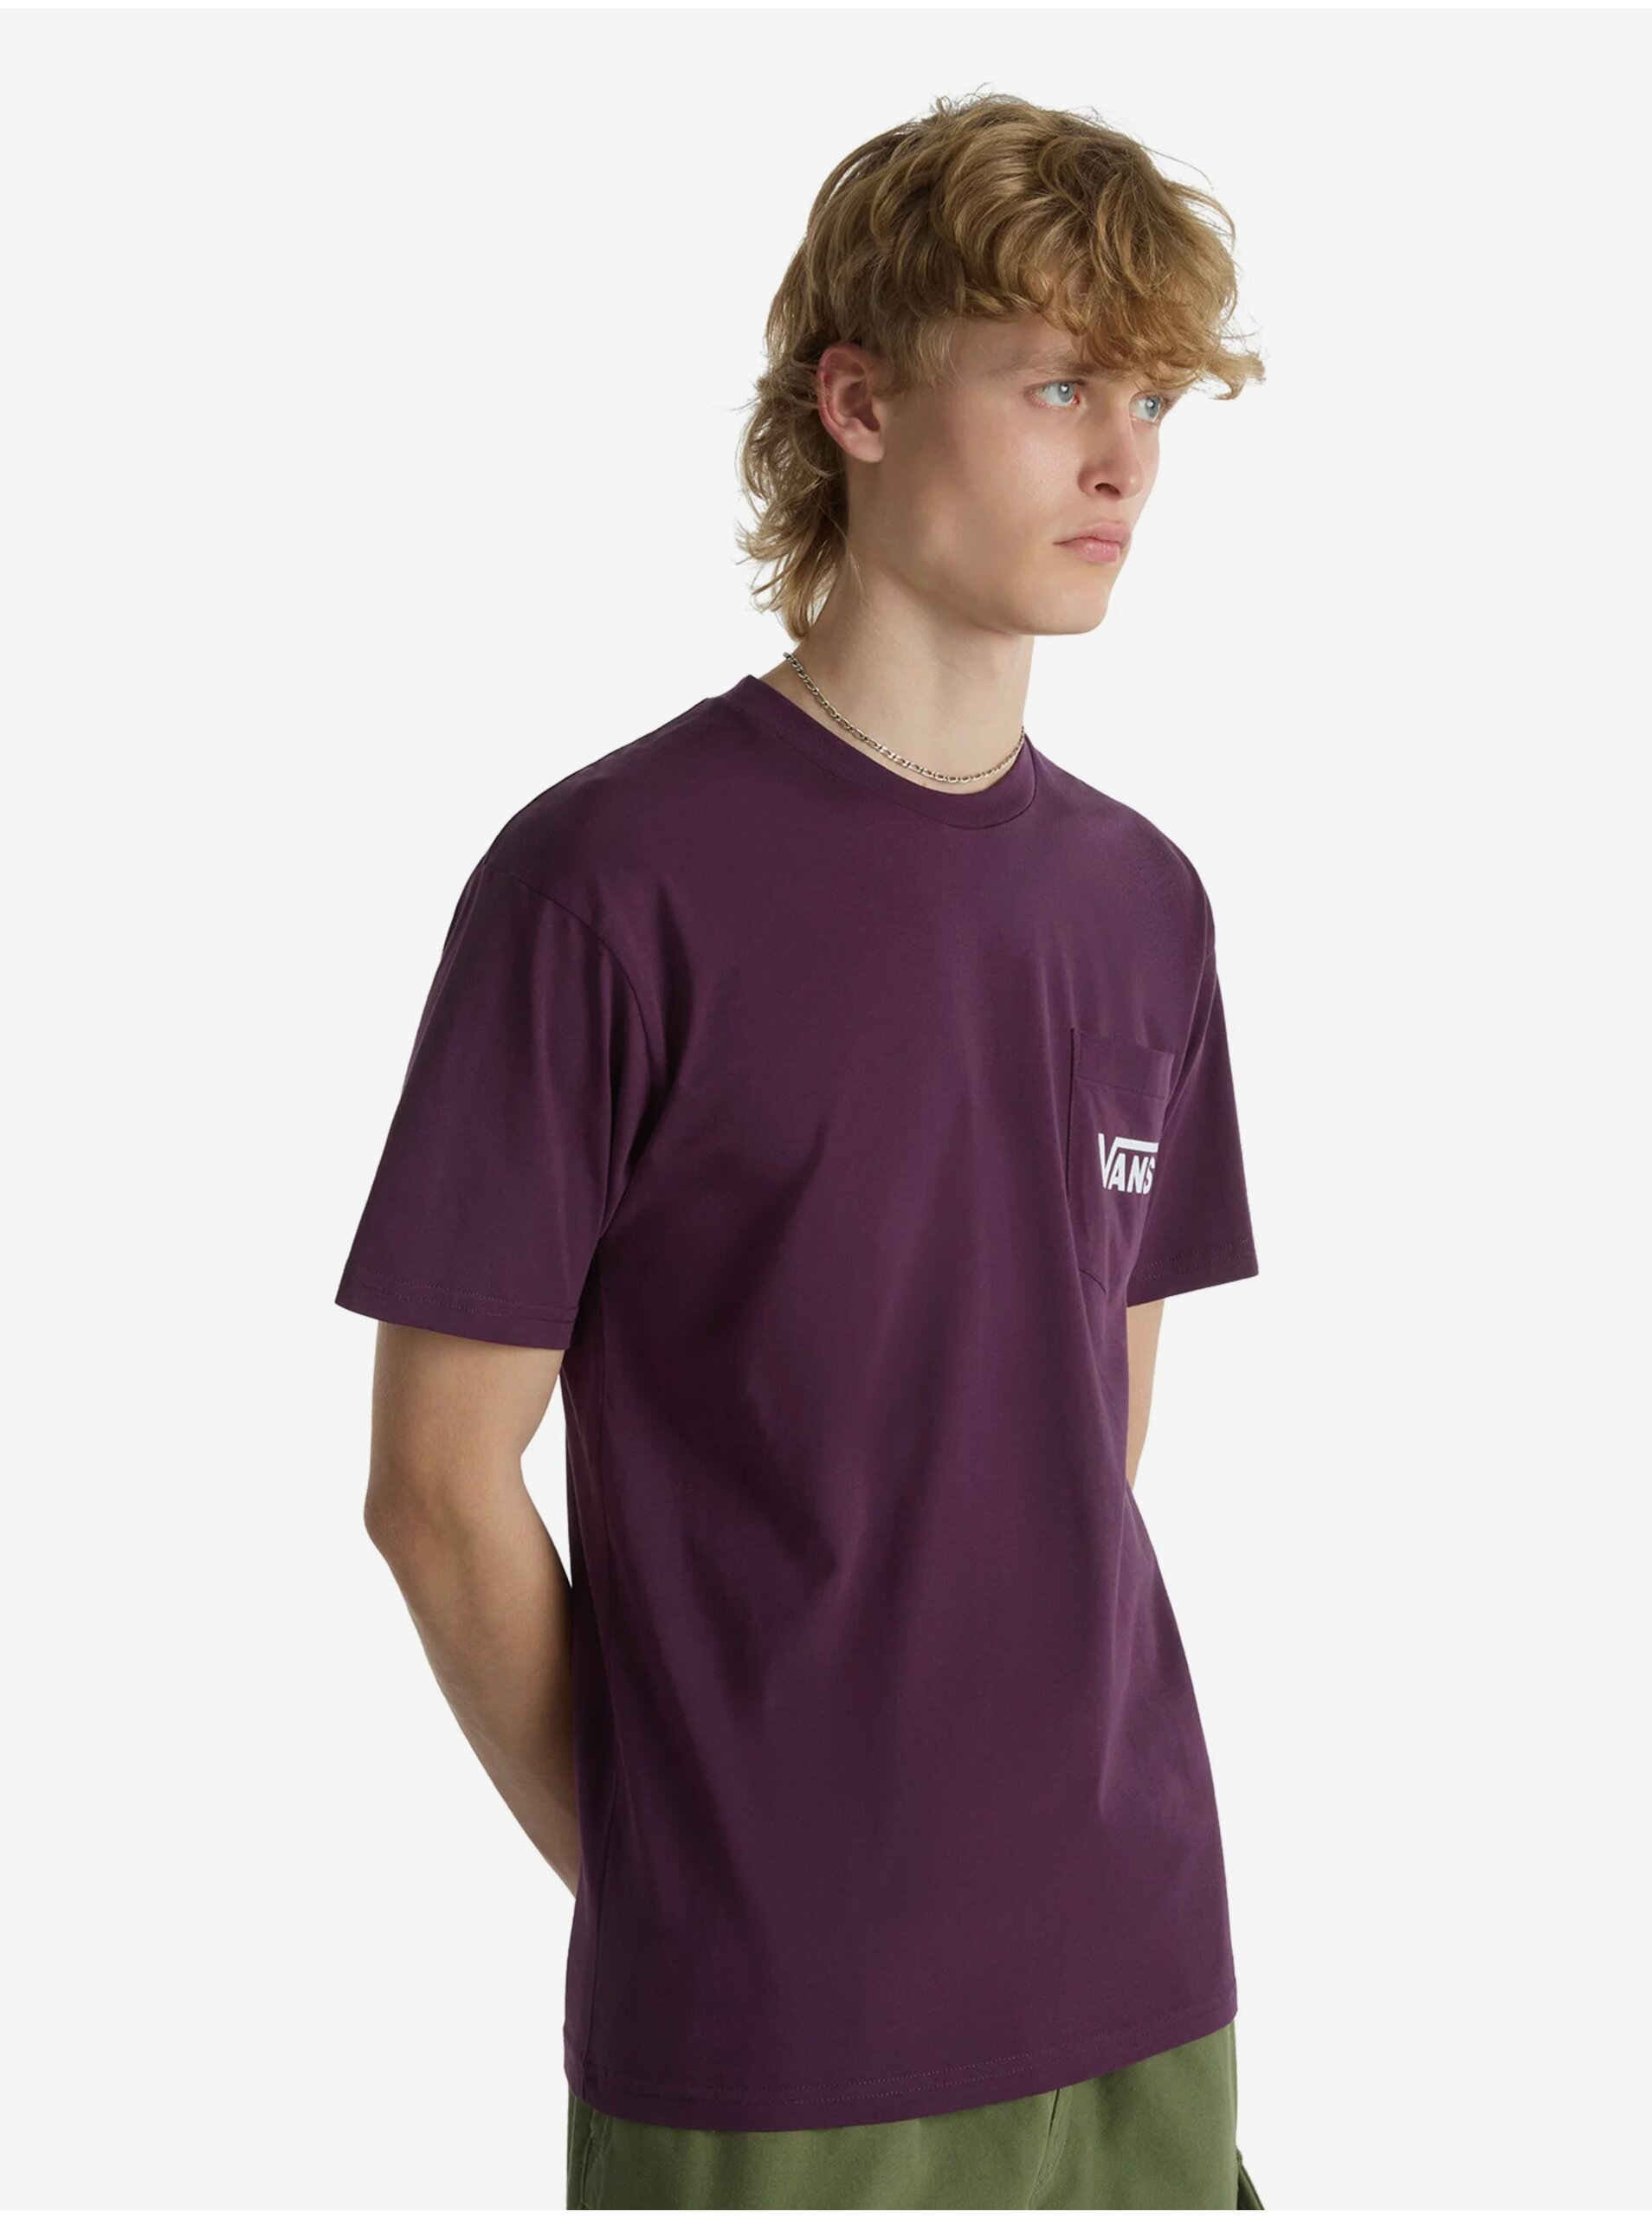 E-shop Fialové pánské tričko VANS Style 76